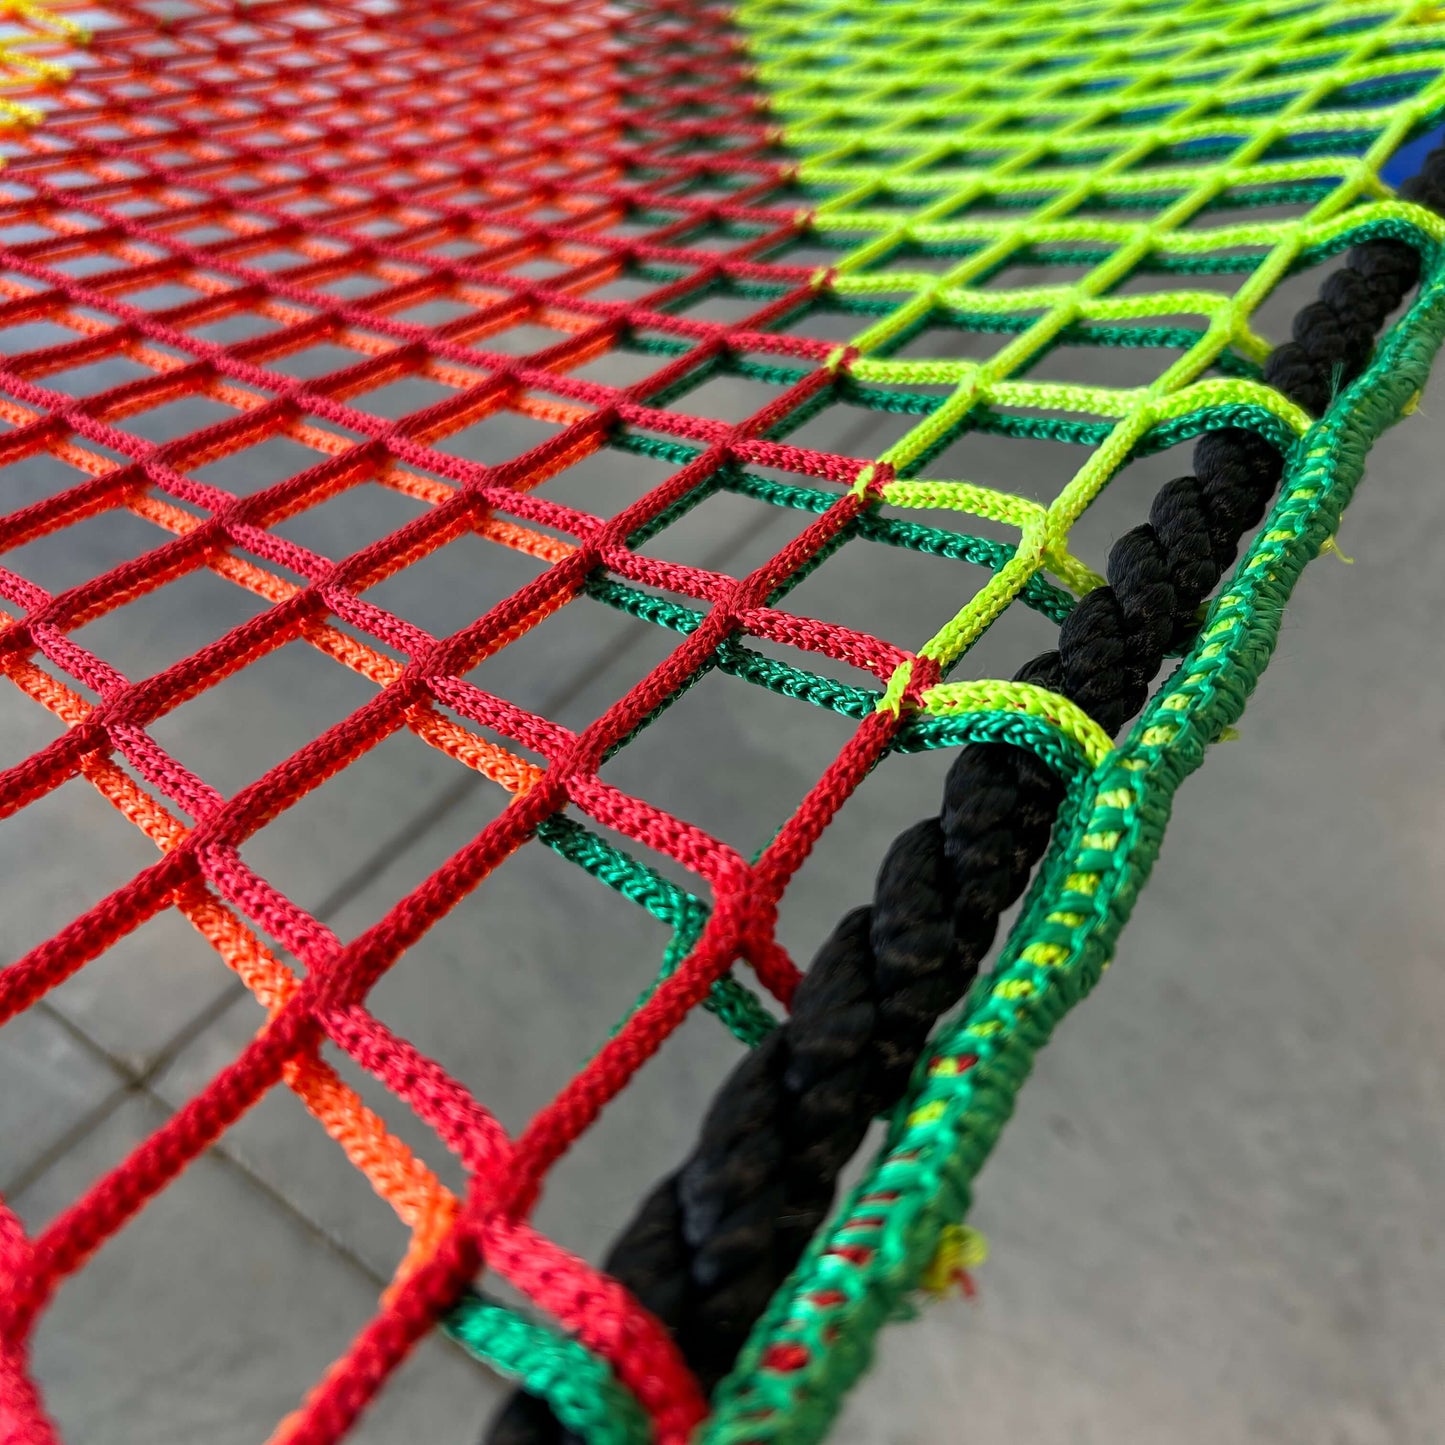 Nylon rope webbing on a cargo net hammock